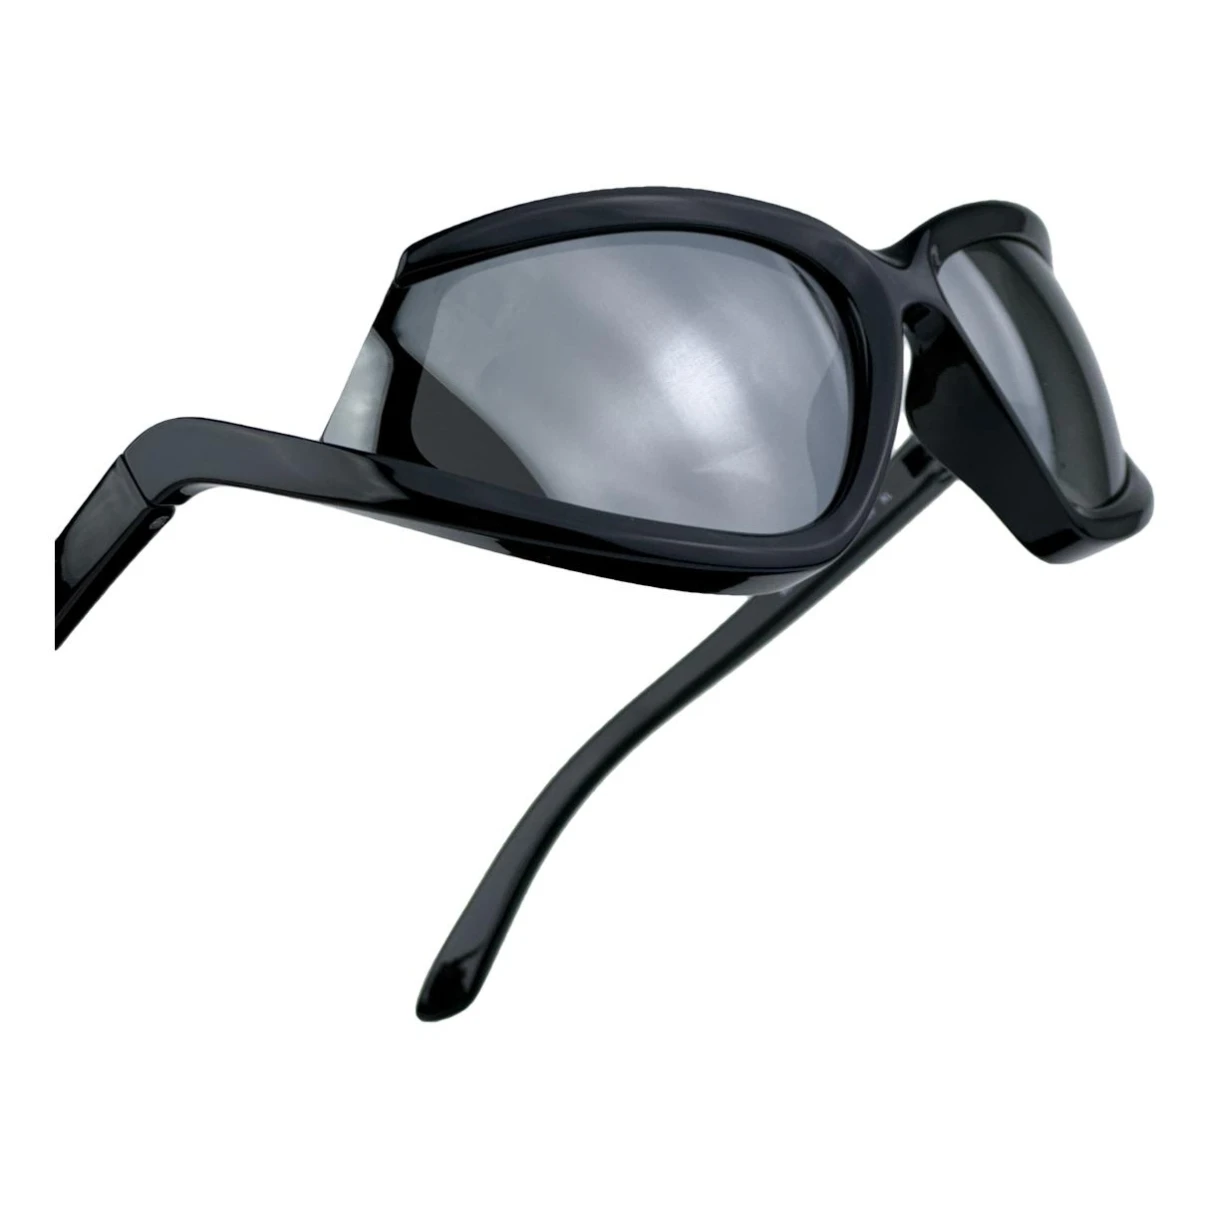 Pre-owned Balenciaga Sunglasses In Black